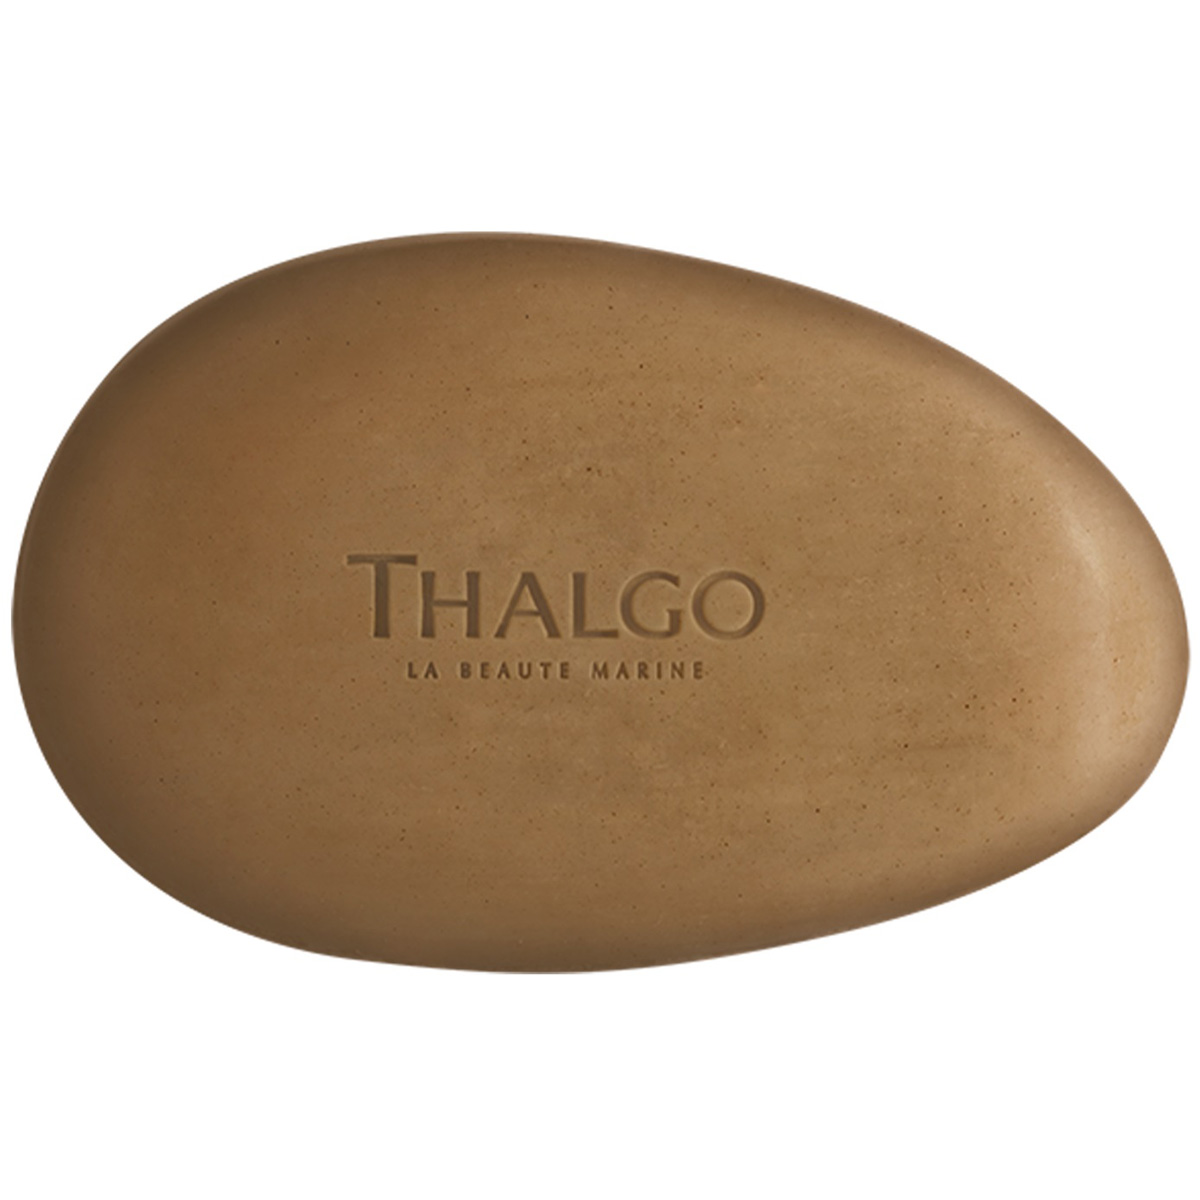 Thalgo Мыло с морскими водорослями для лица и тела, 100 г (Thalgo, Eveil à la Mer)